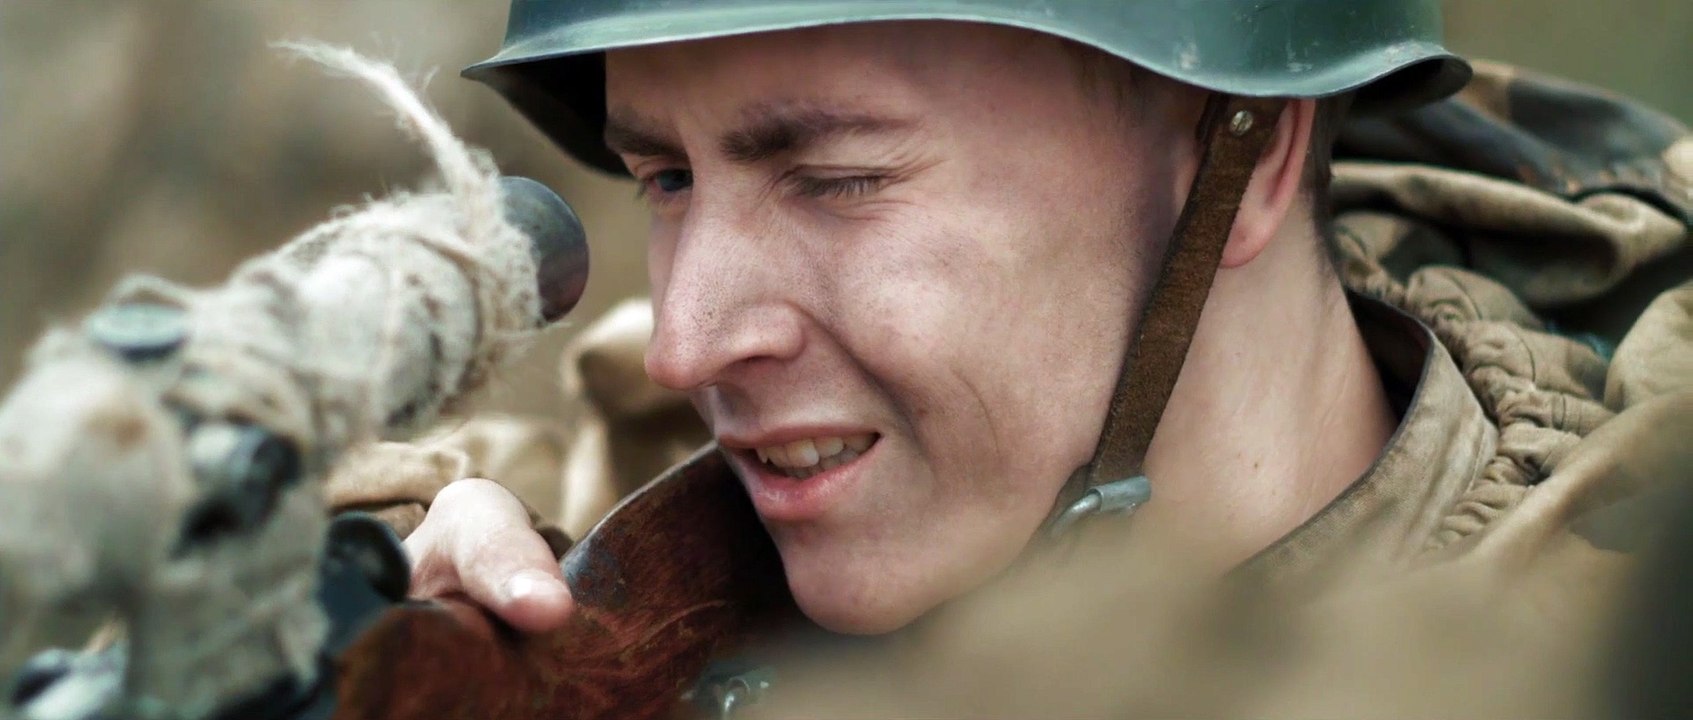 Sniper: One Shot to Survive - Trailer (Deutsch) HD